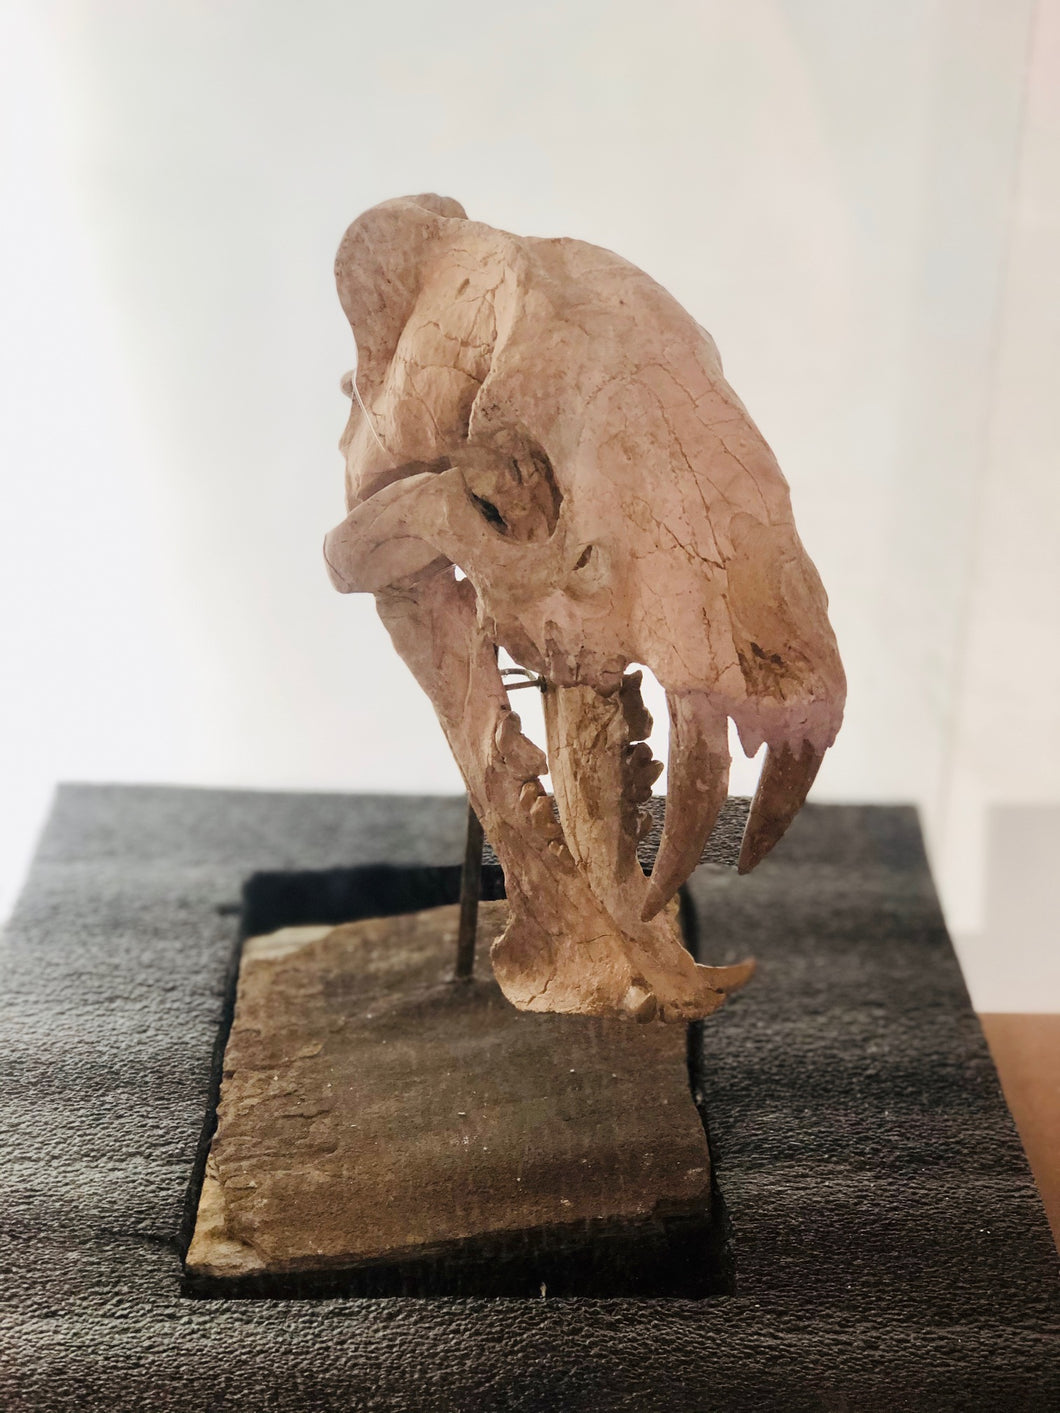 5mya sabretooth (Hoplophoneus Primaevus) fossil